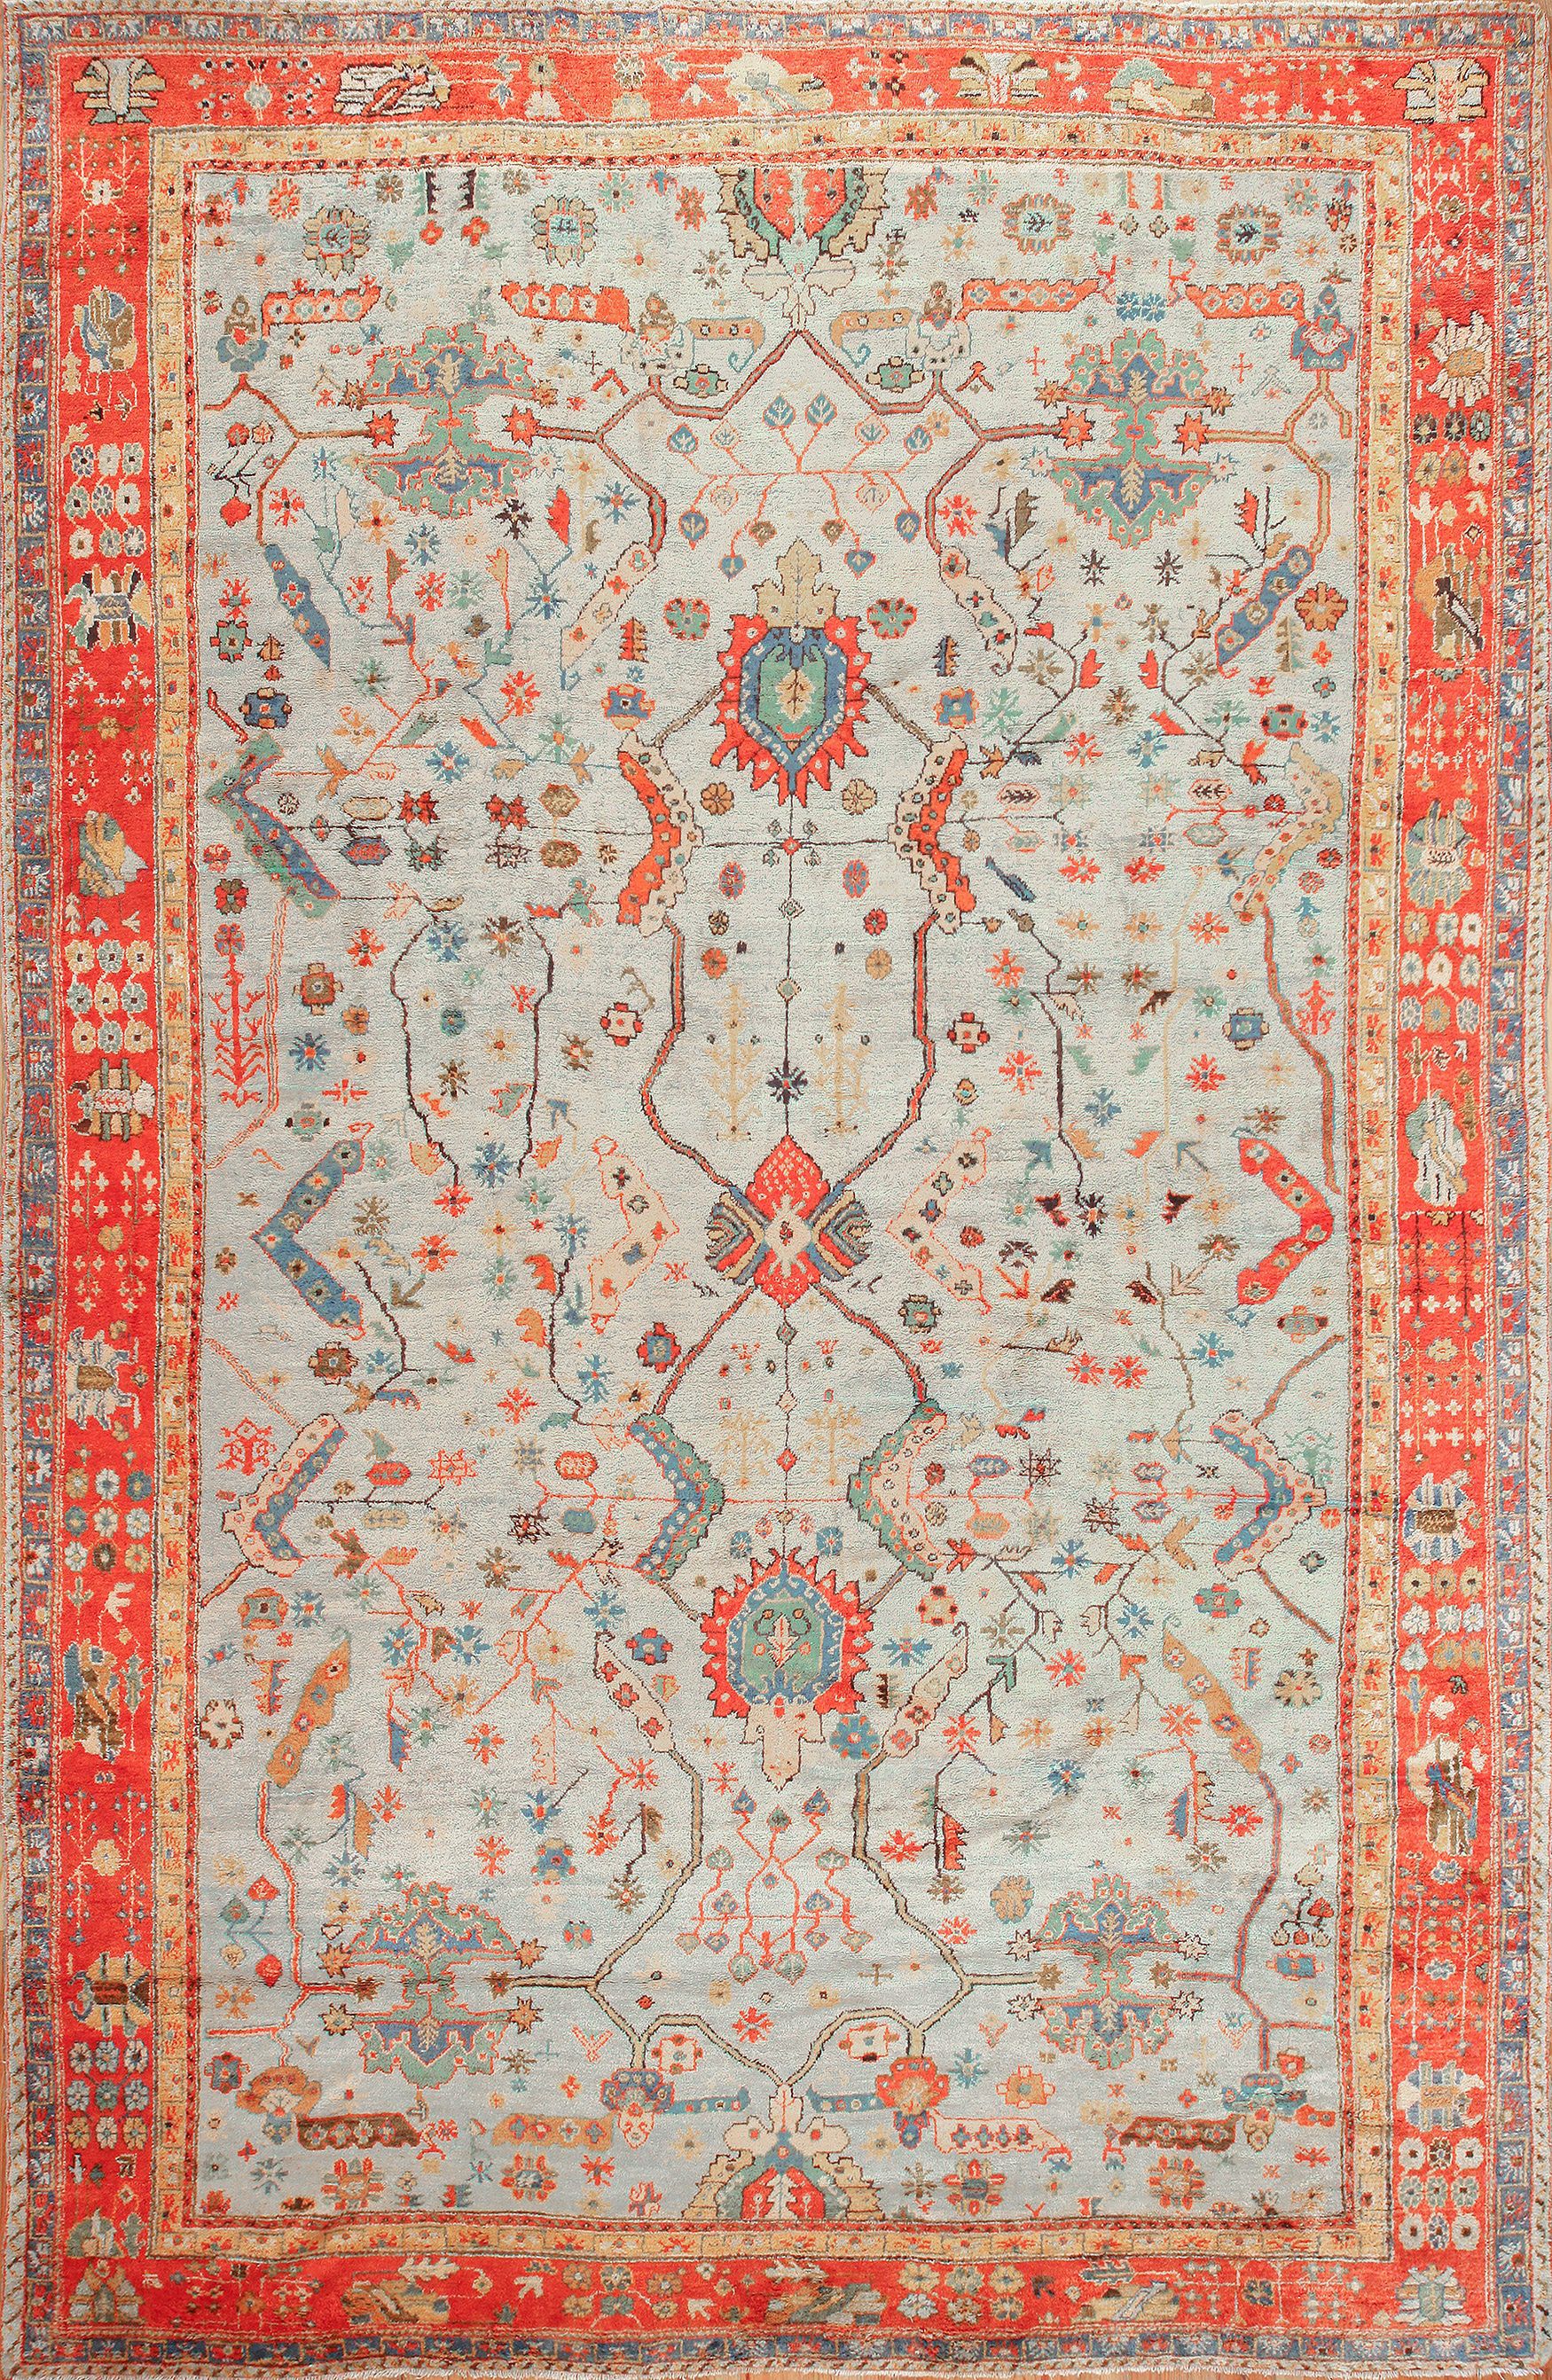 Turkish oushak rugs